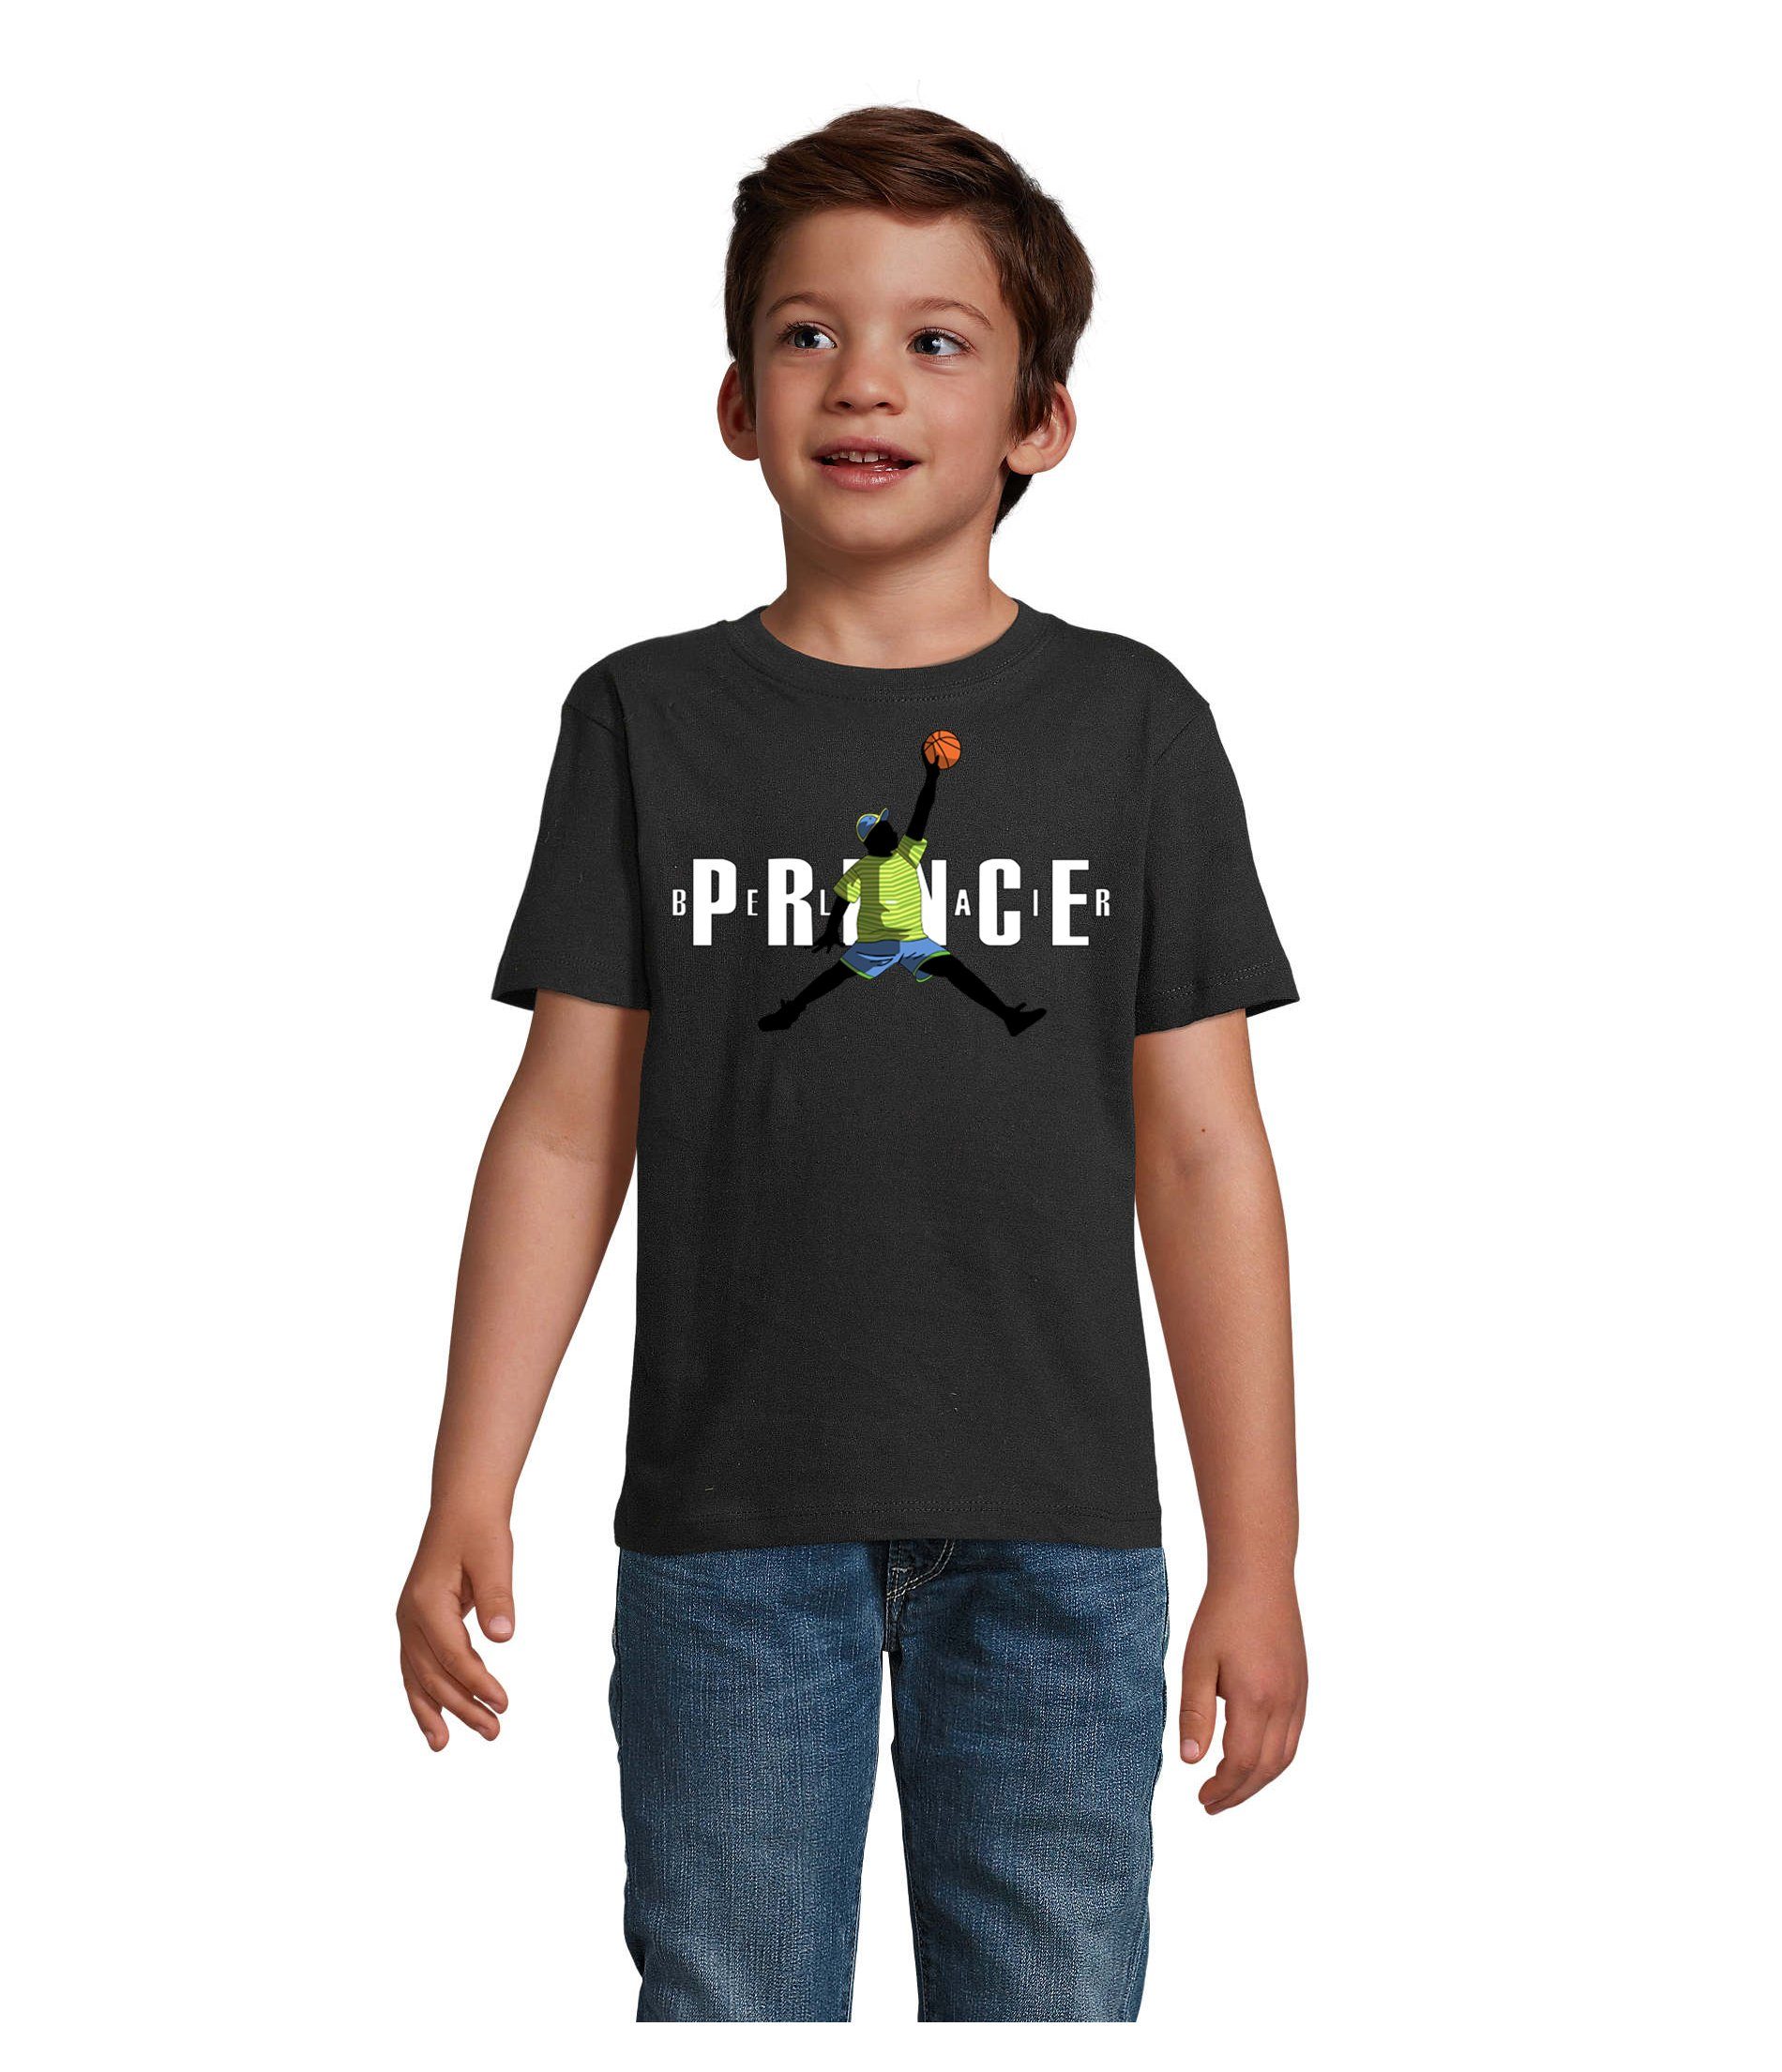 Blondie & Brownie T-Shirt Kinder Jungen & Mädchen Fresh Prince Bel Air Basketball in vielen Farben Schwarz